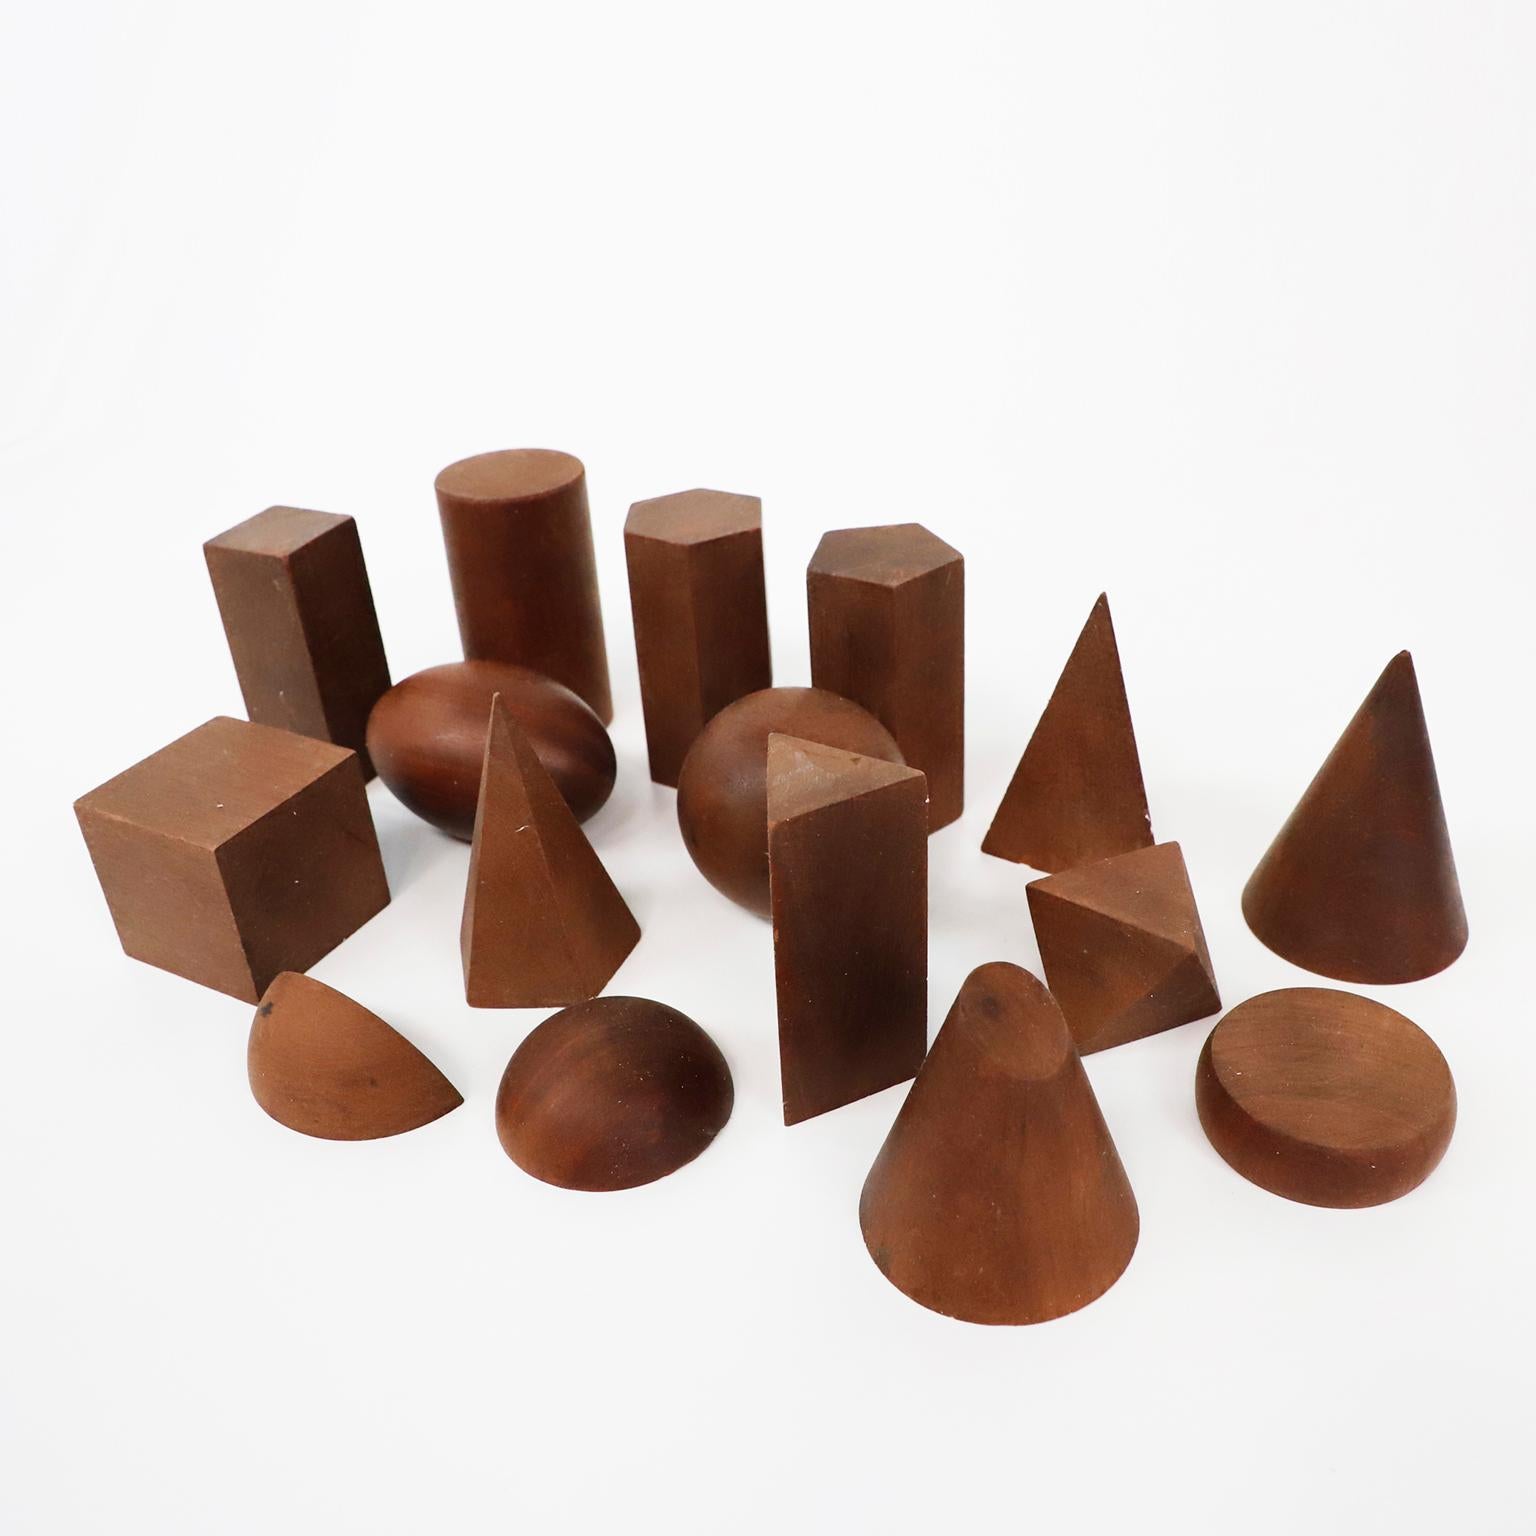 Ca. 1940. Wir bieten dieses Set mit 16 geometrischen Formen aus Holz im Vintage-Stil an. Diese Holzmodelle wurden für den Unterricht in fester Geometrie und Mathematik verwendet.